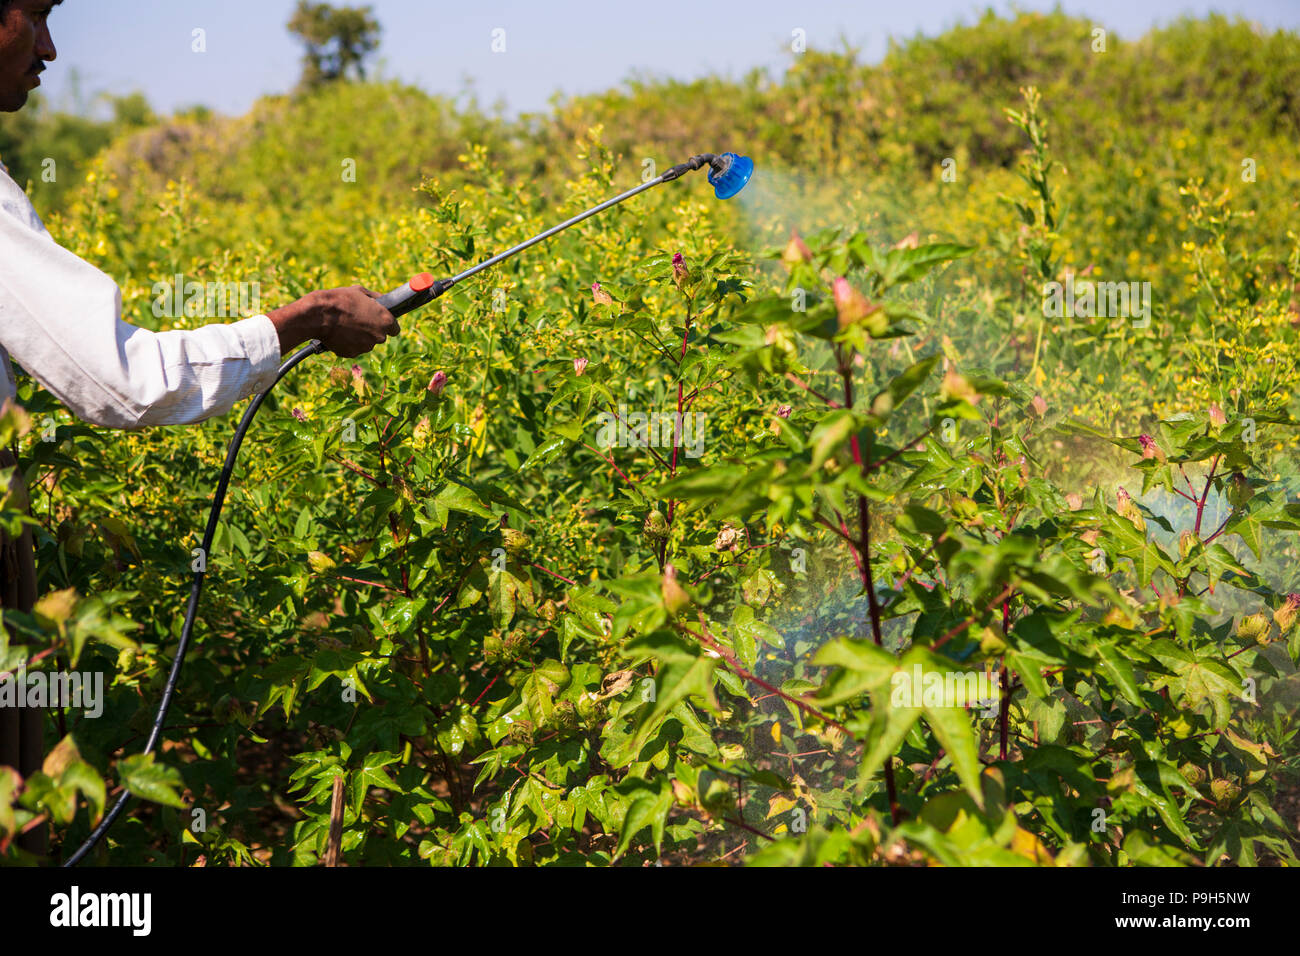 Un agricoltore la spruzzatura di pesticidi organici sul suo raccolto di cotone. Foto Stock